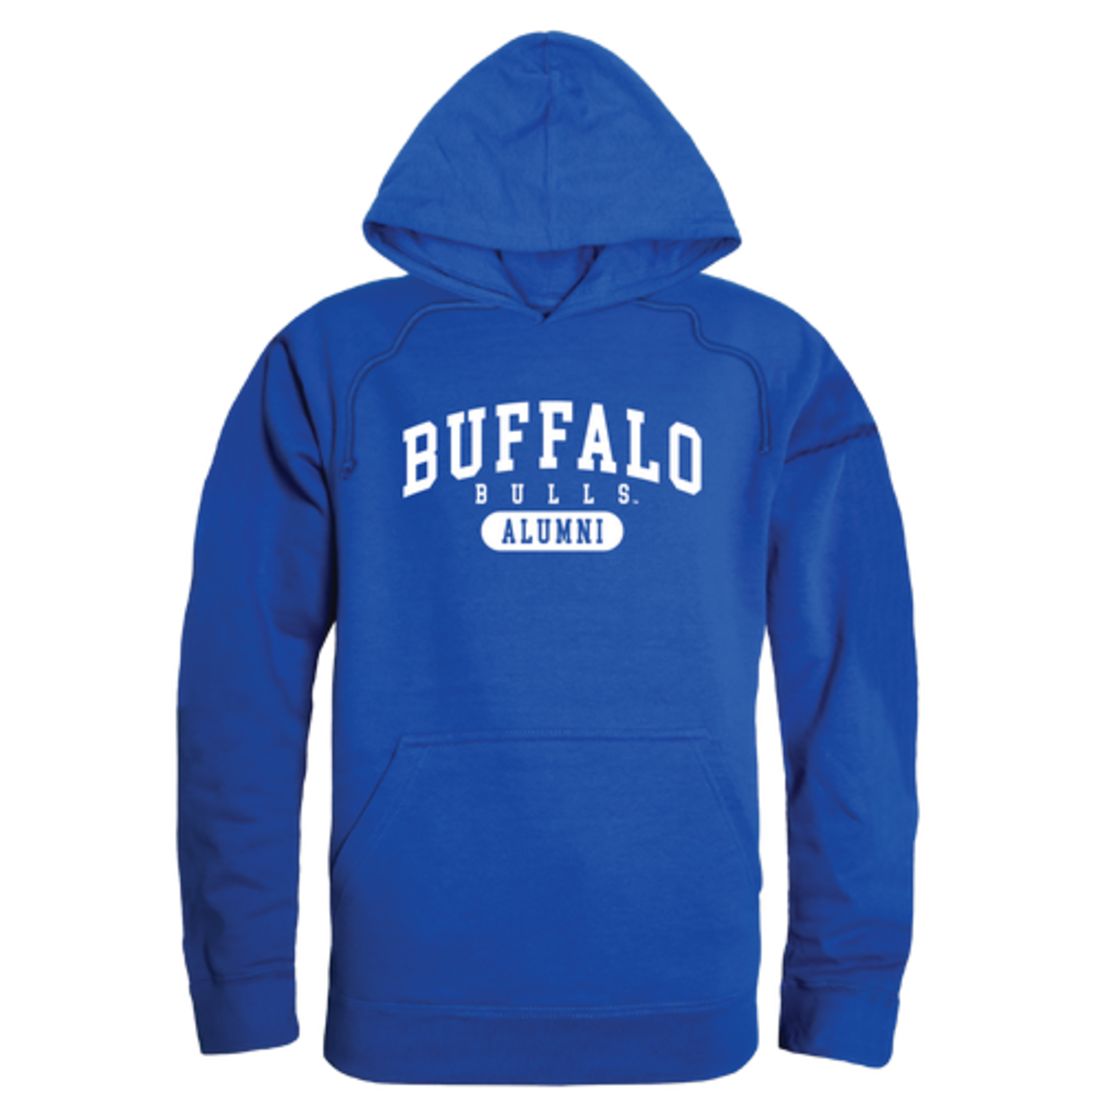 SUNY University at Buffalo Bulls Alumni Fleece Hoodie Sweatshirts Heather Grey-Campus-Wardrobe